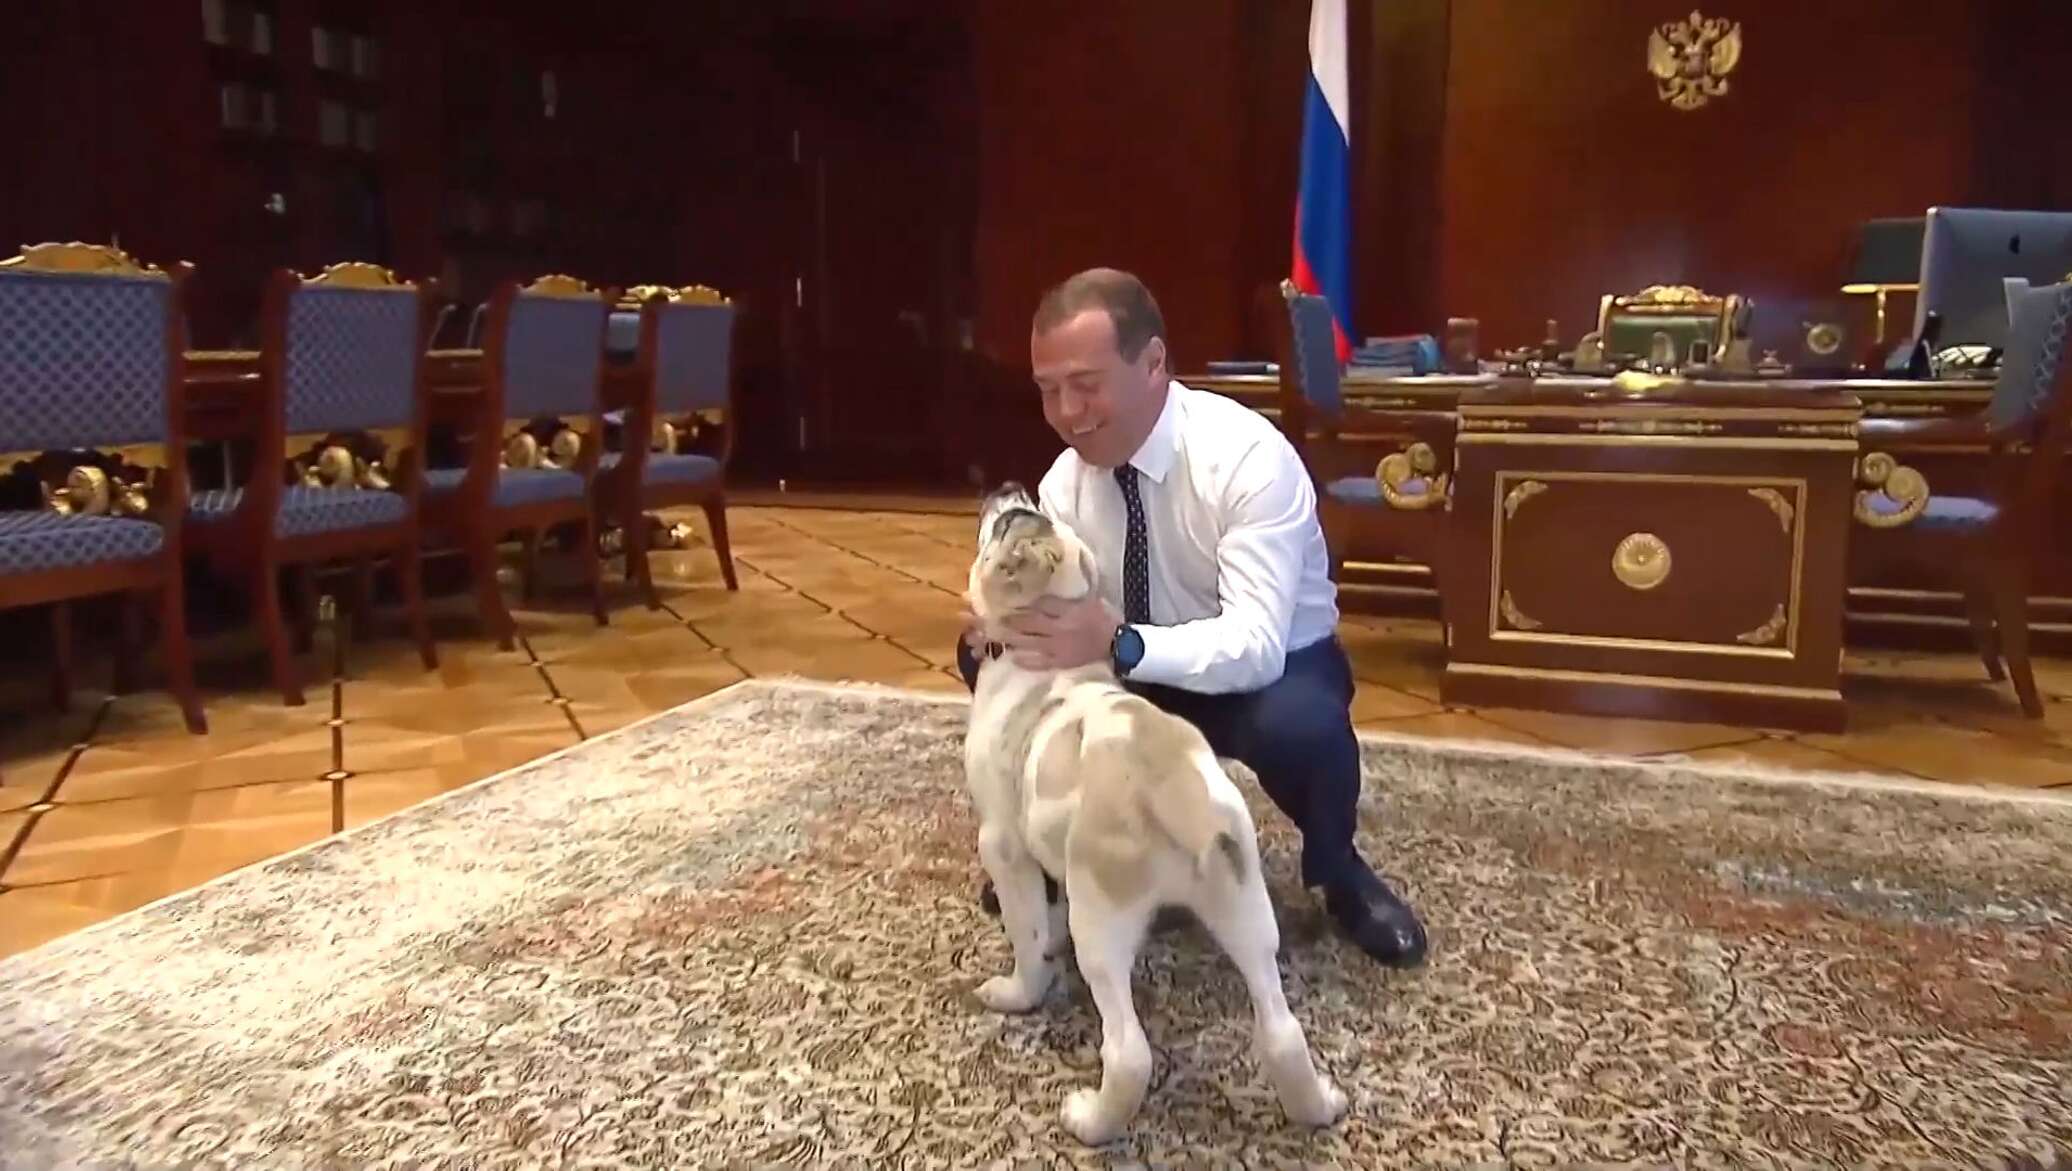 Путин с алабаем фото